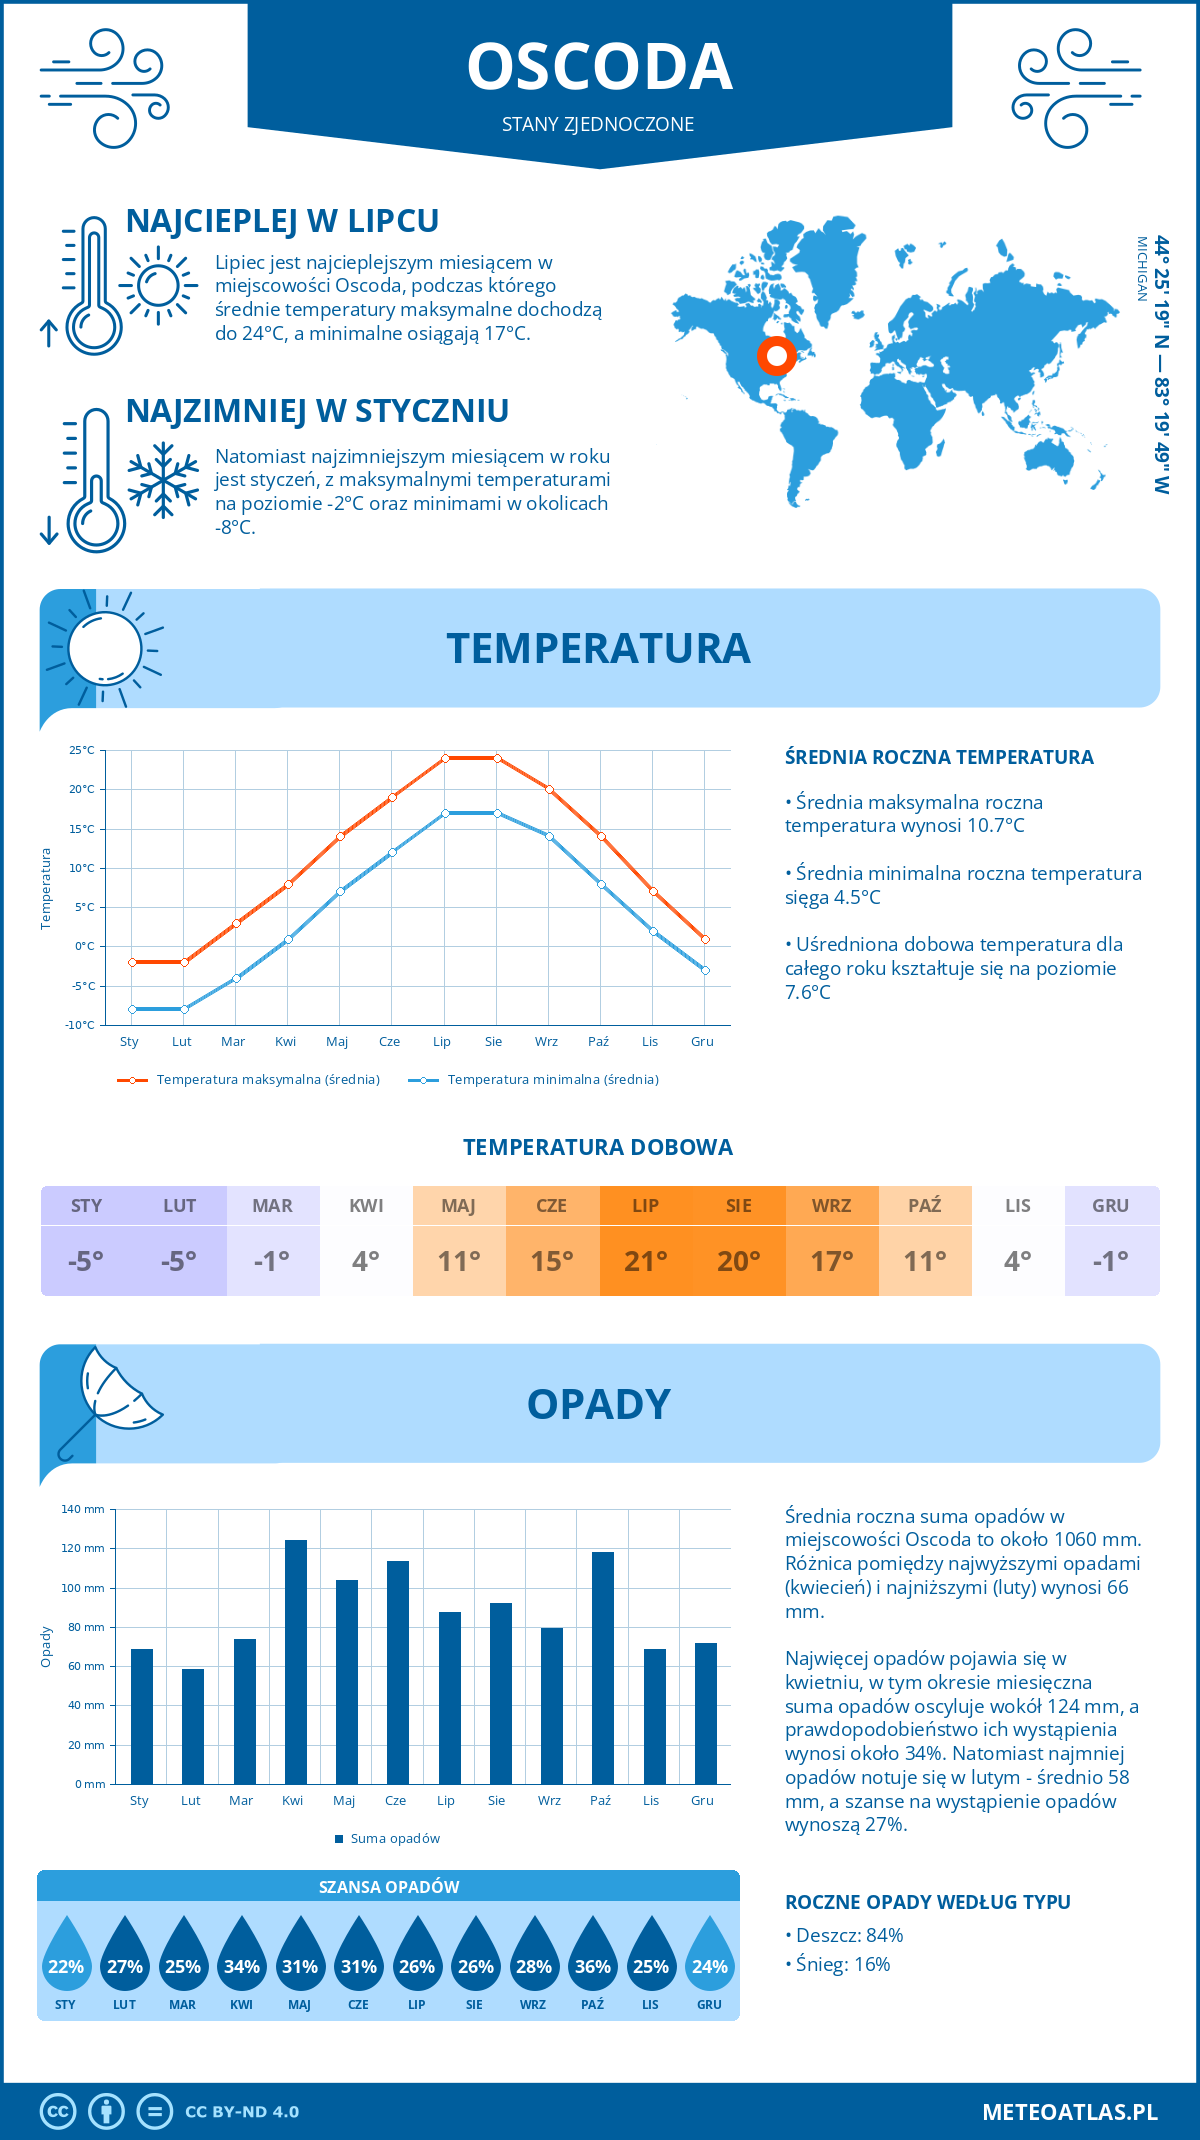 Pogoda Oscoda (Stany Zjednoczone). Temperatura oraz opady.